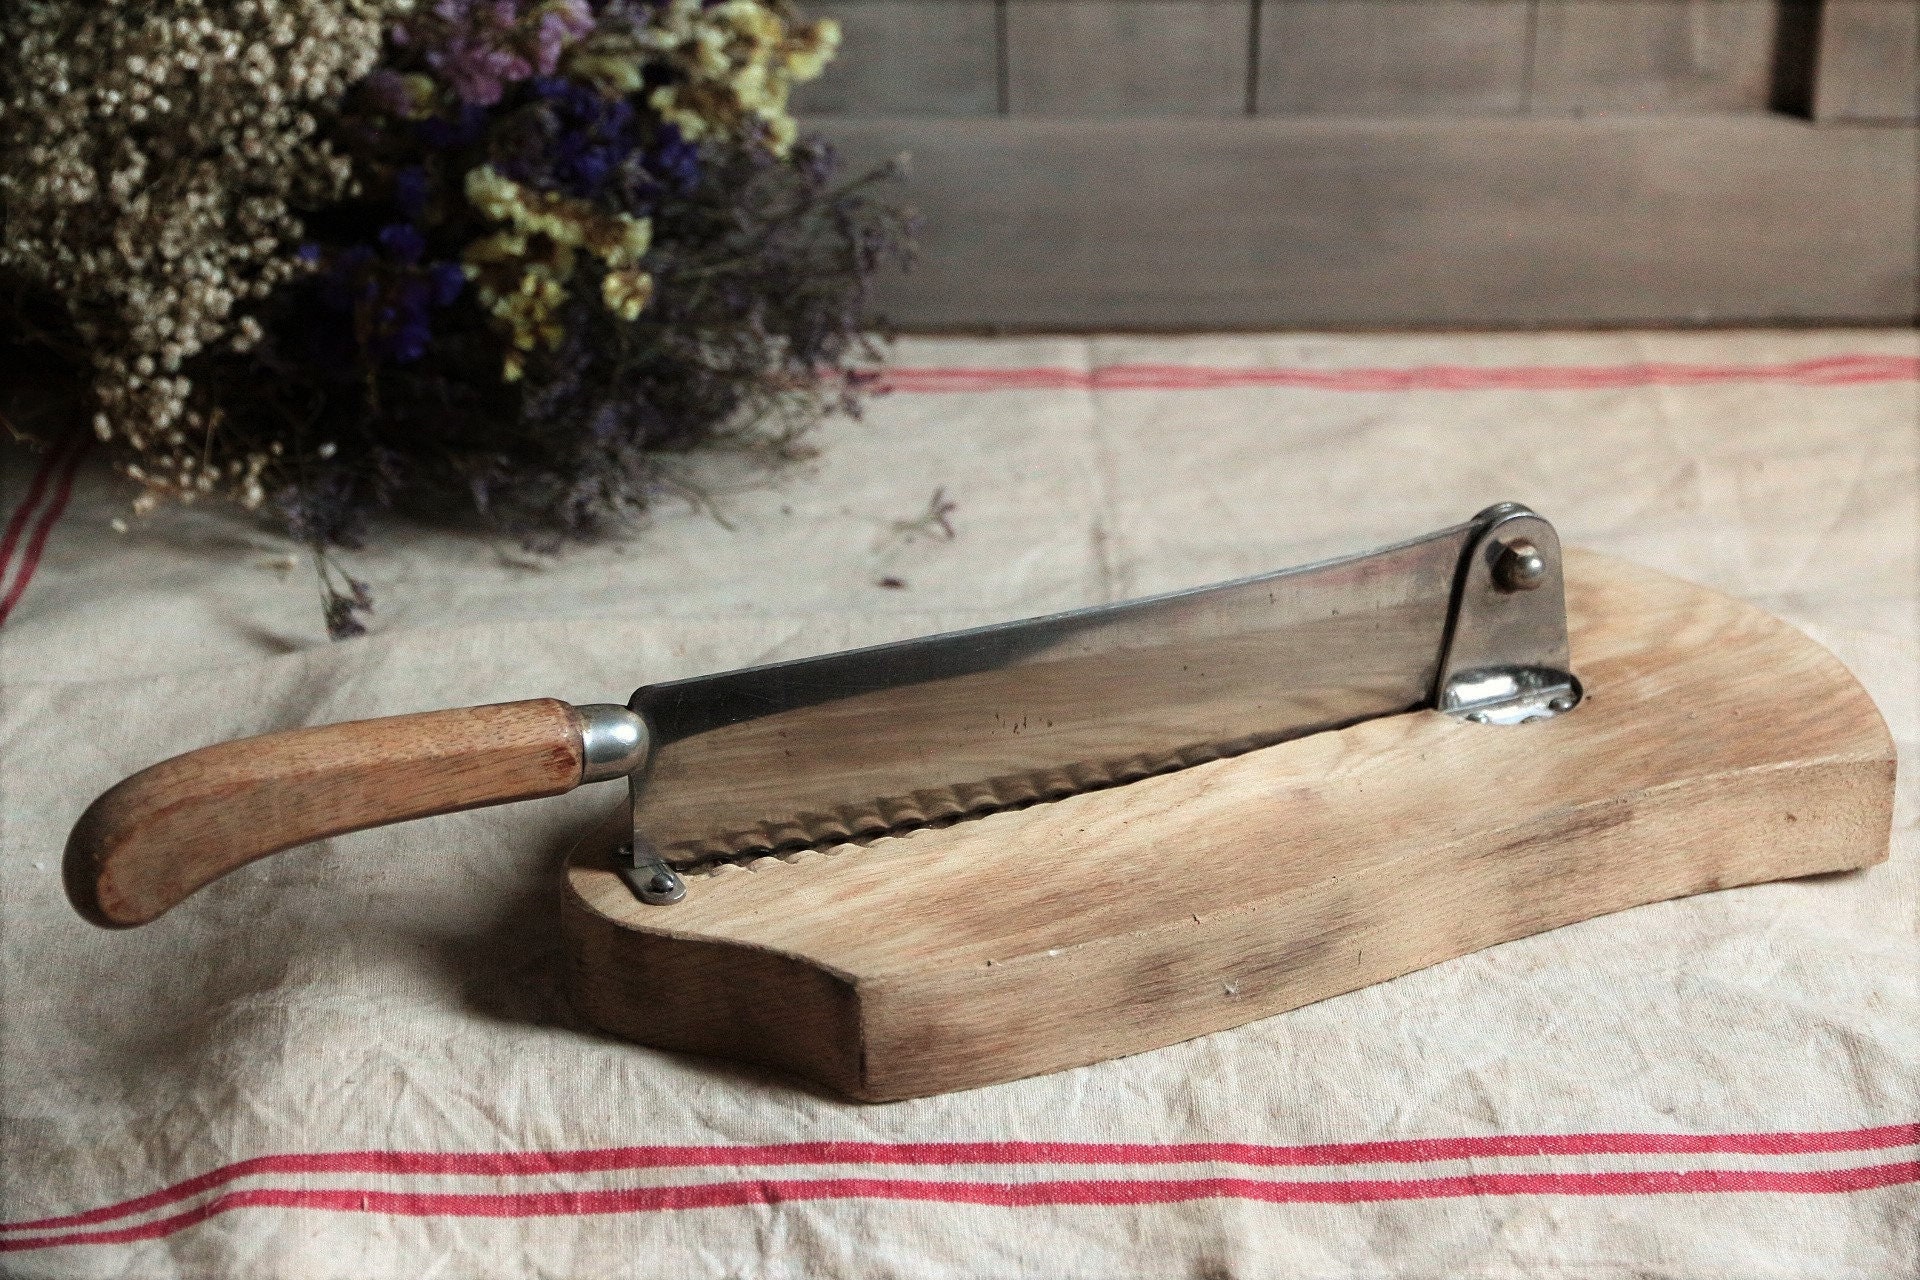 Vintage Royale Adjustable Meat Slicer Slicing Knife stainless steel japan